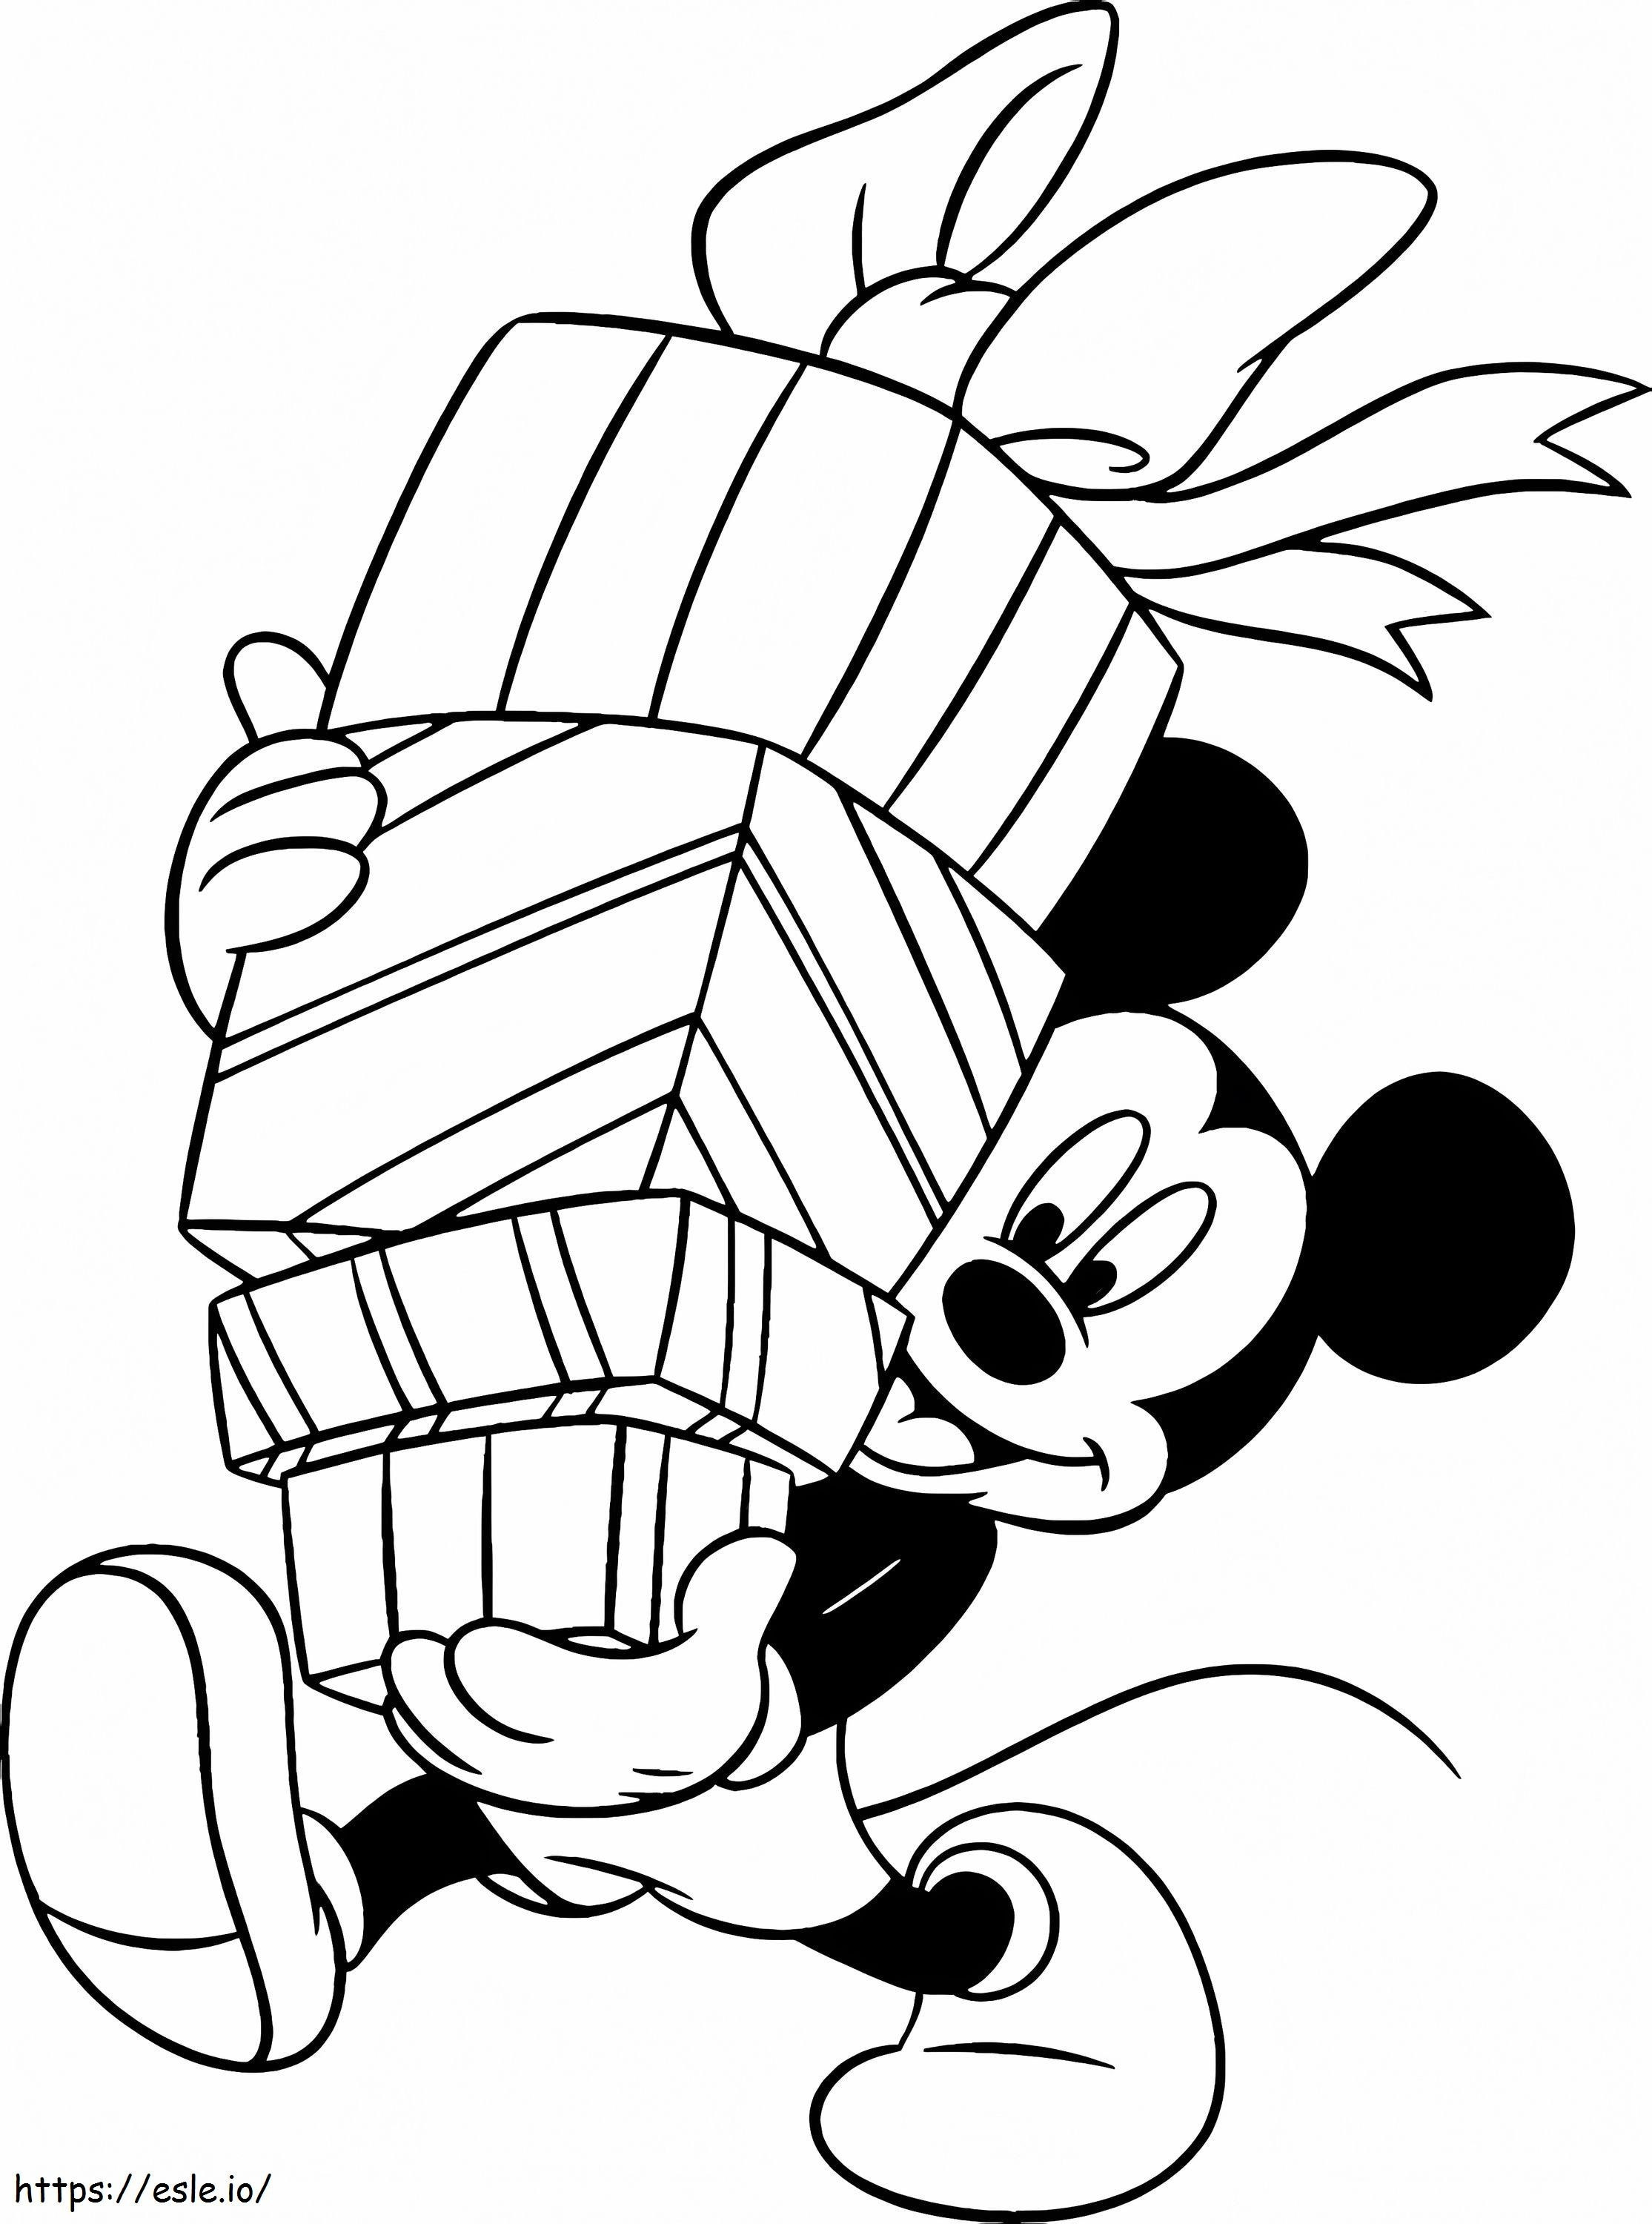 Mickey Mouse met cadeautjes kleurplaat kleurplaat